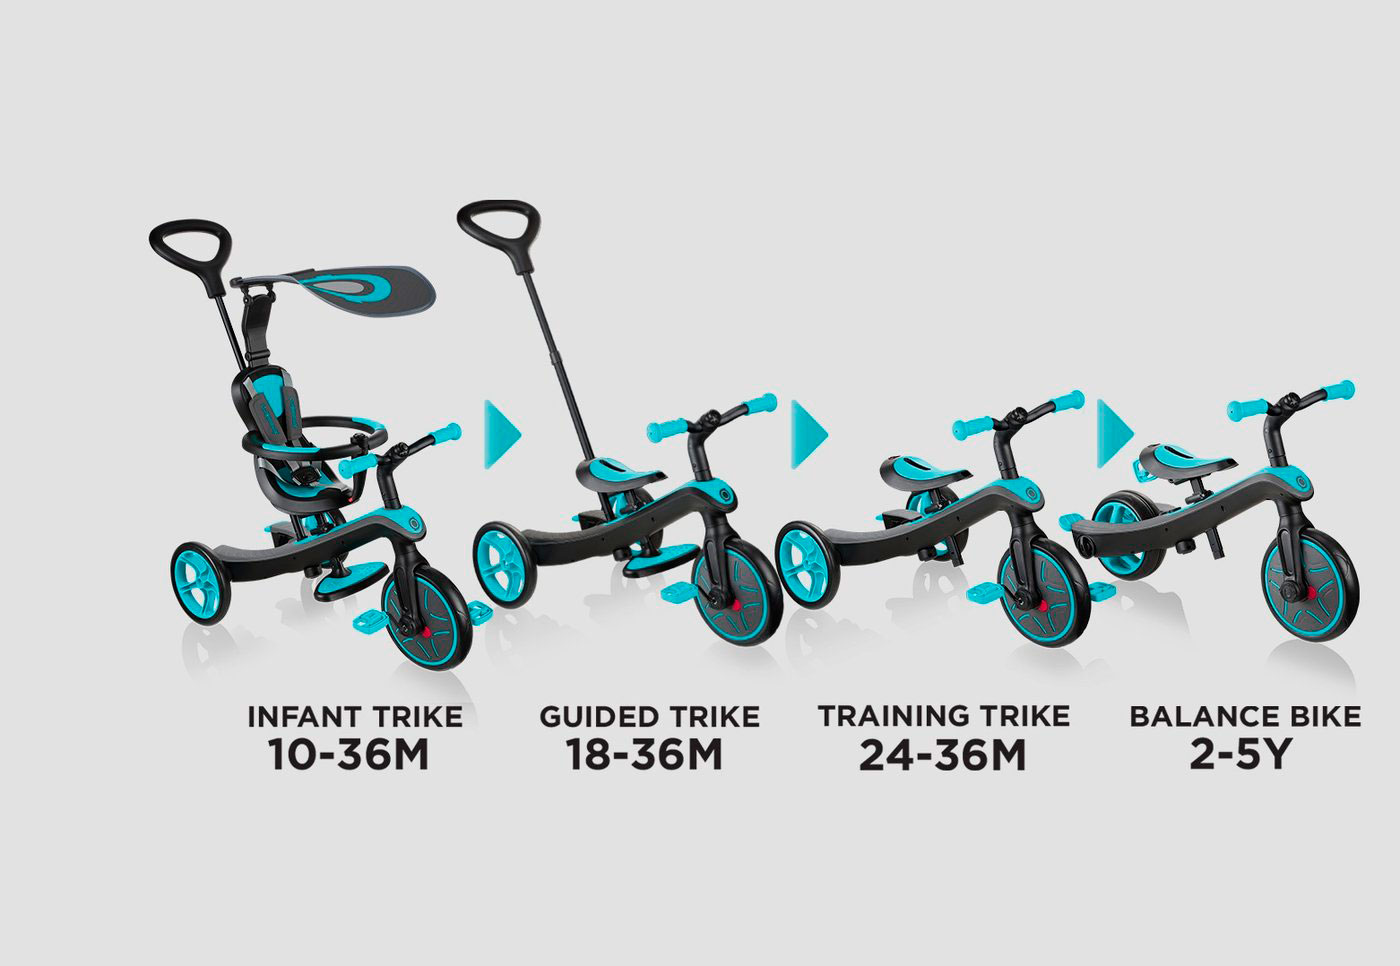 Ayúdales a mejorar sus habilidades motoras y entrenar la fuerza con un  triciclo para bebé